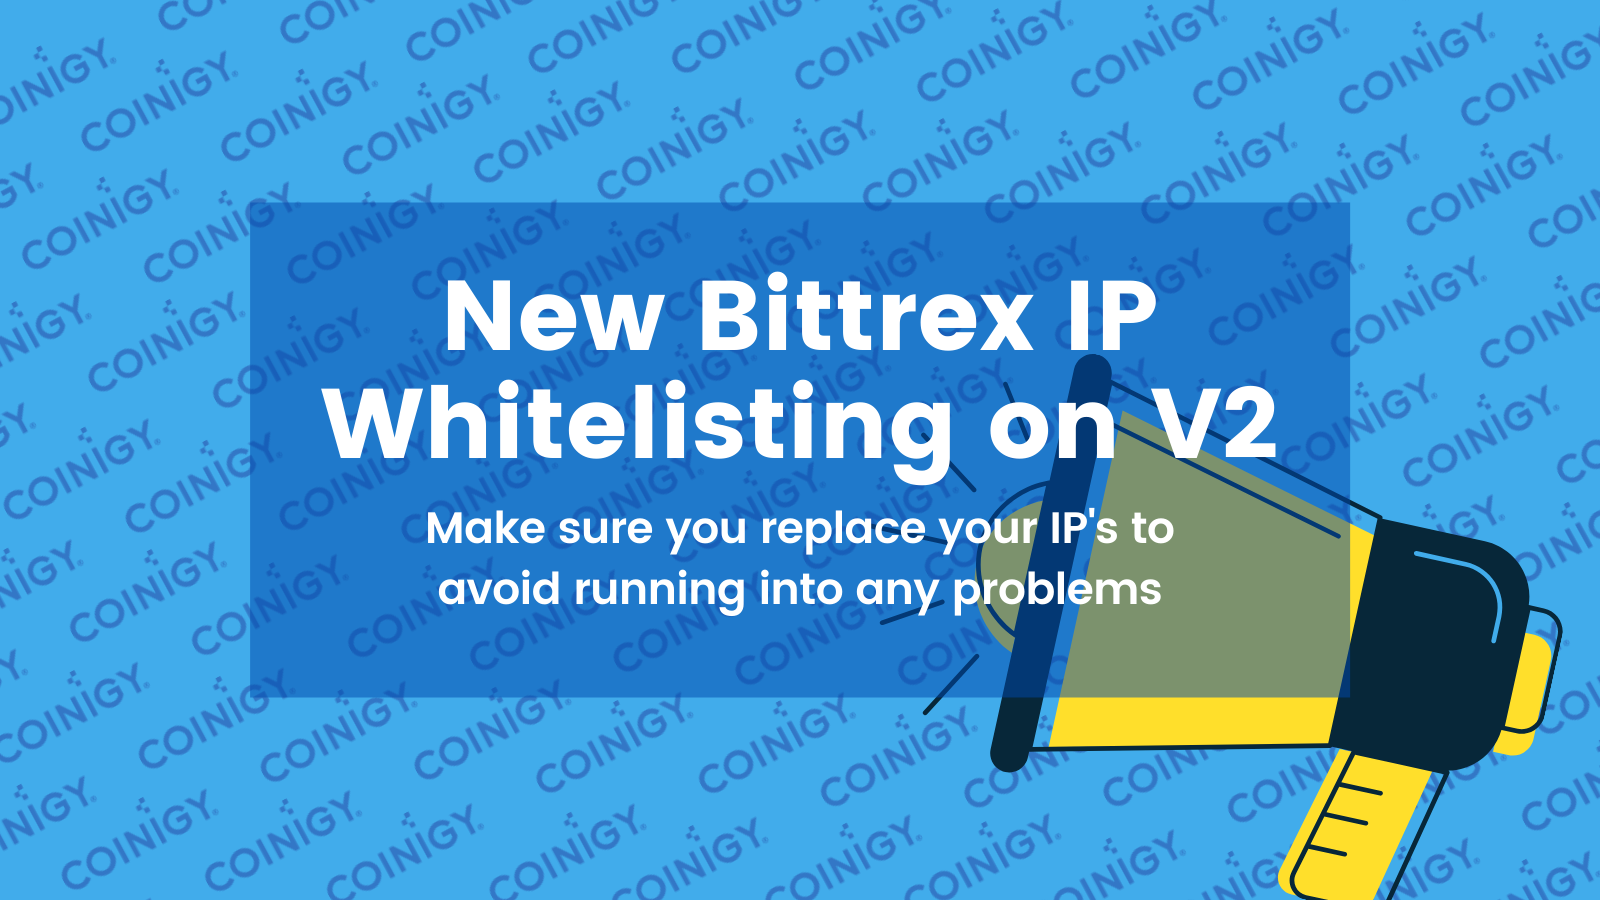 New Bittrex IP Whitelisting Now Live on Coinigy V2